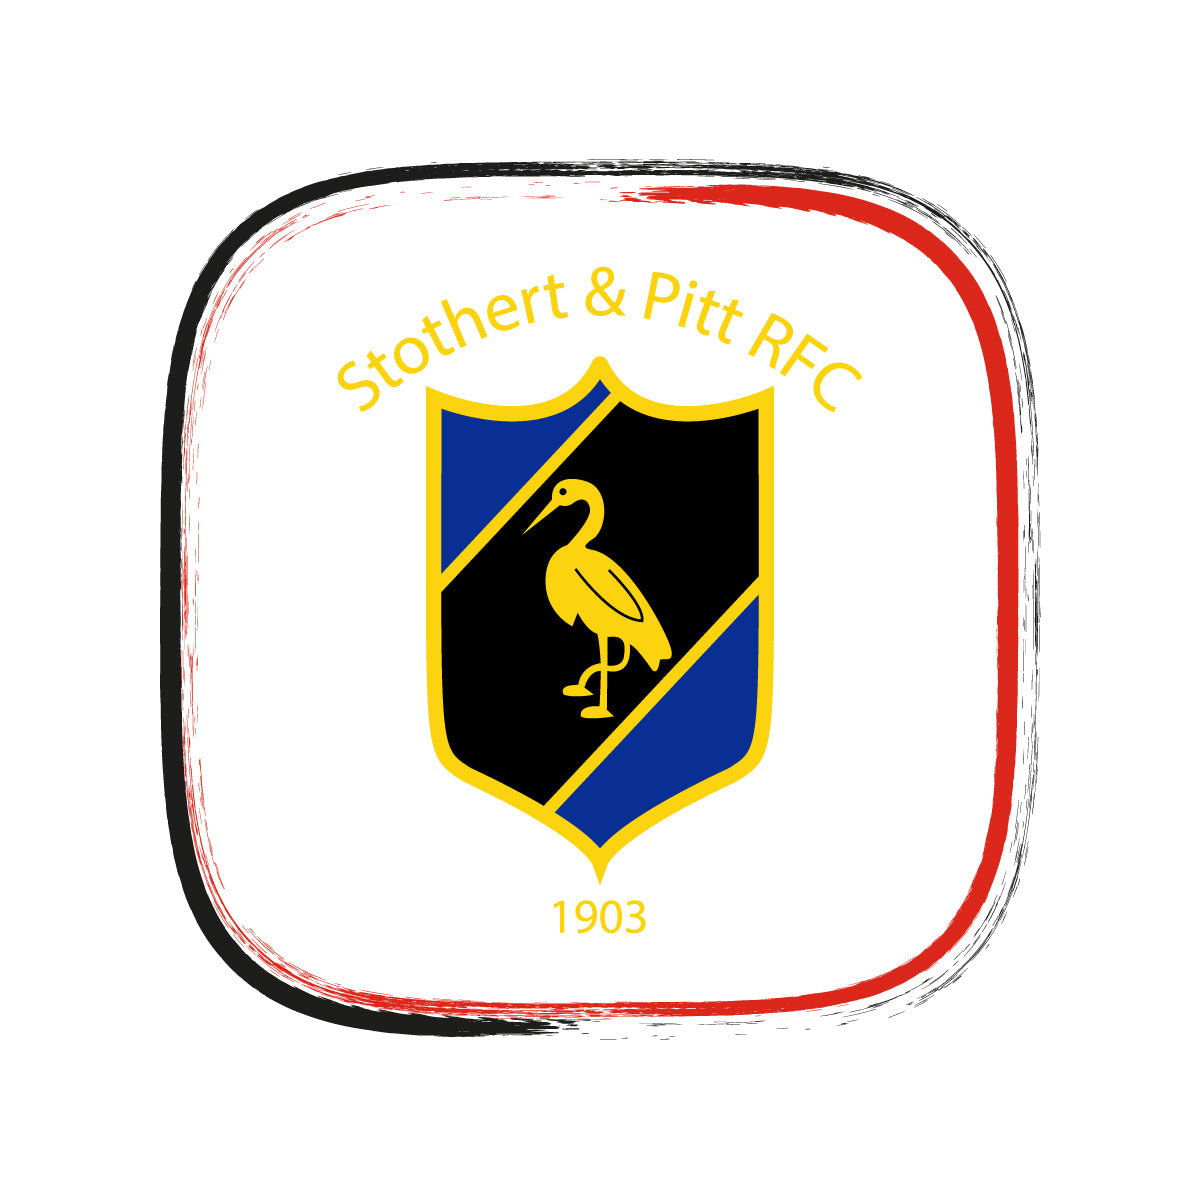 Stothert and Pitt RFC